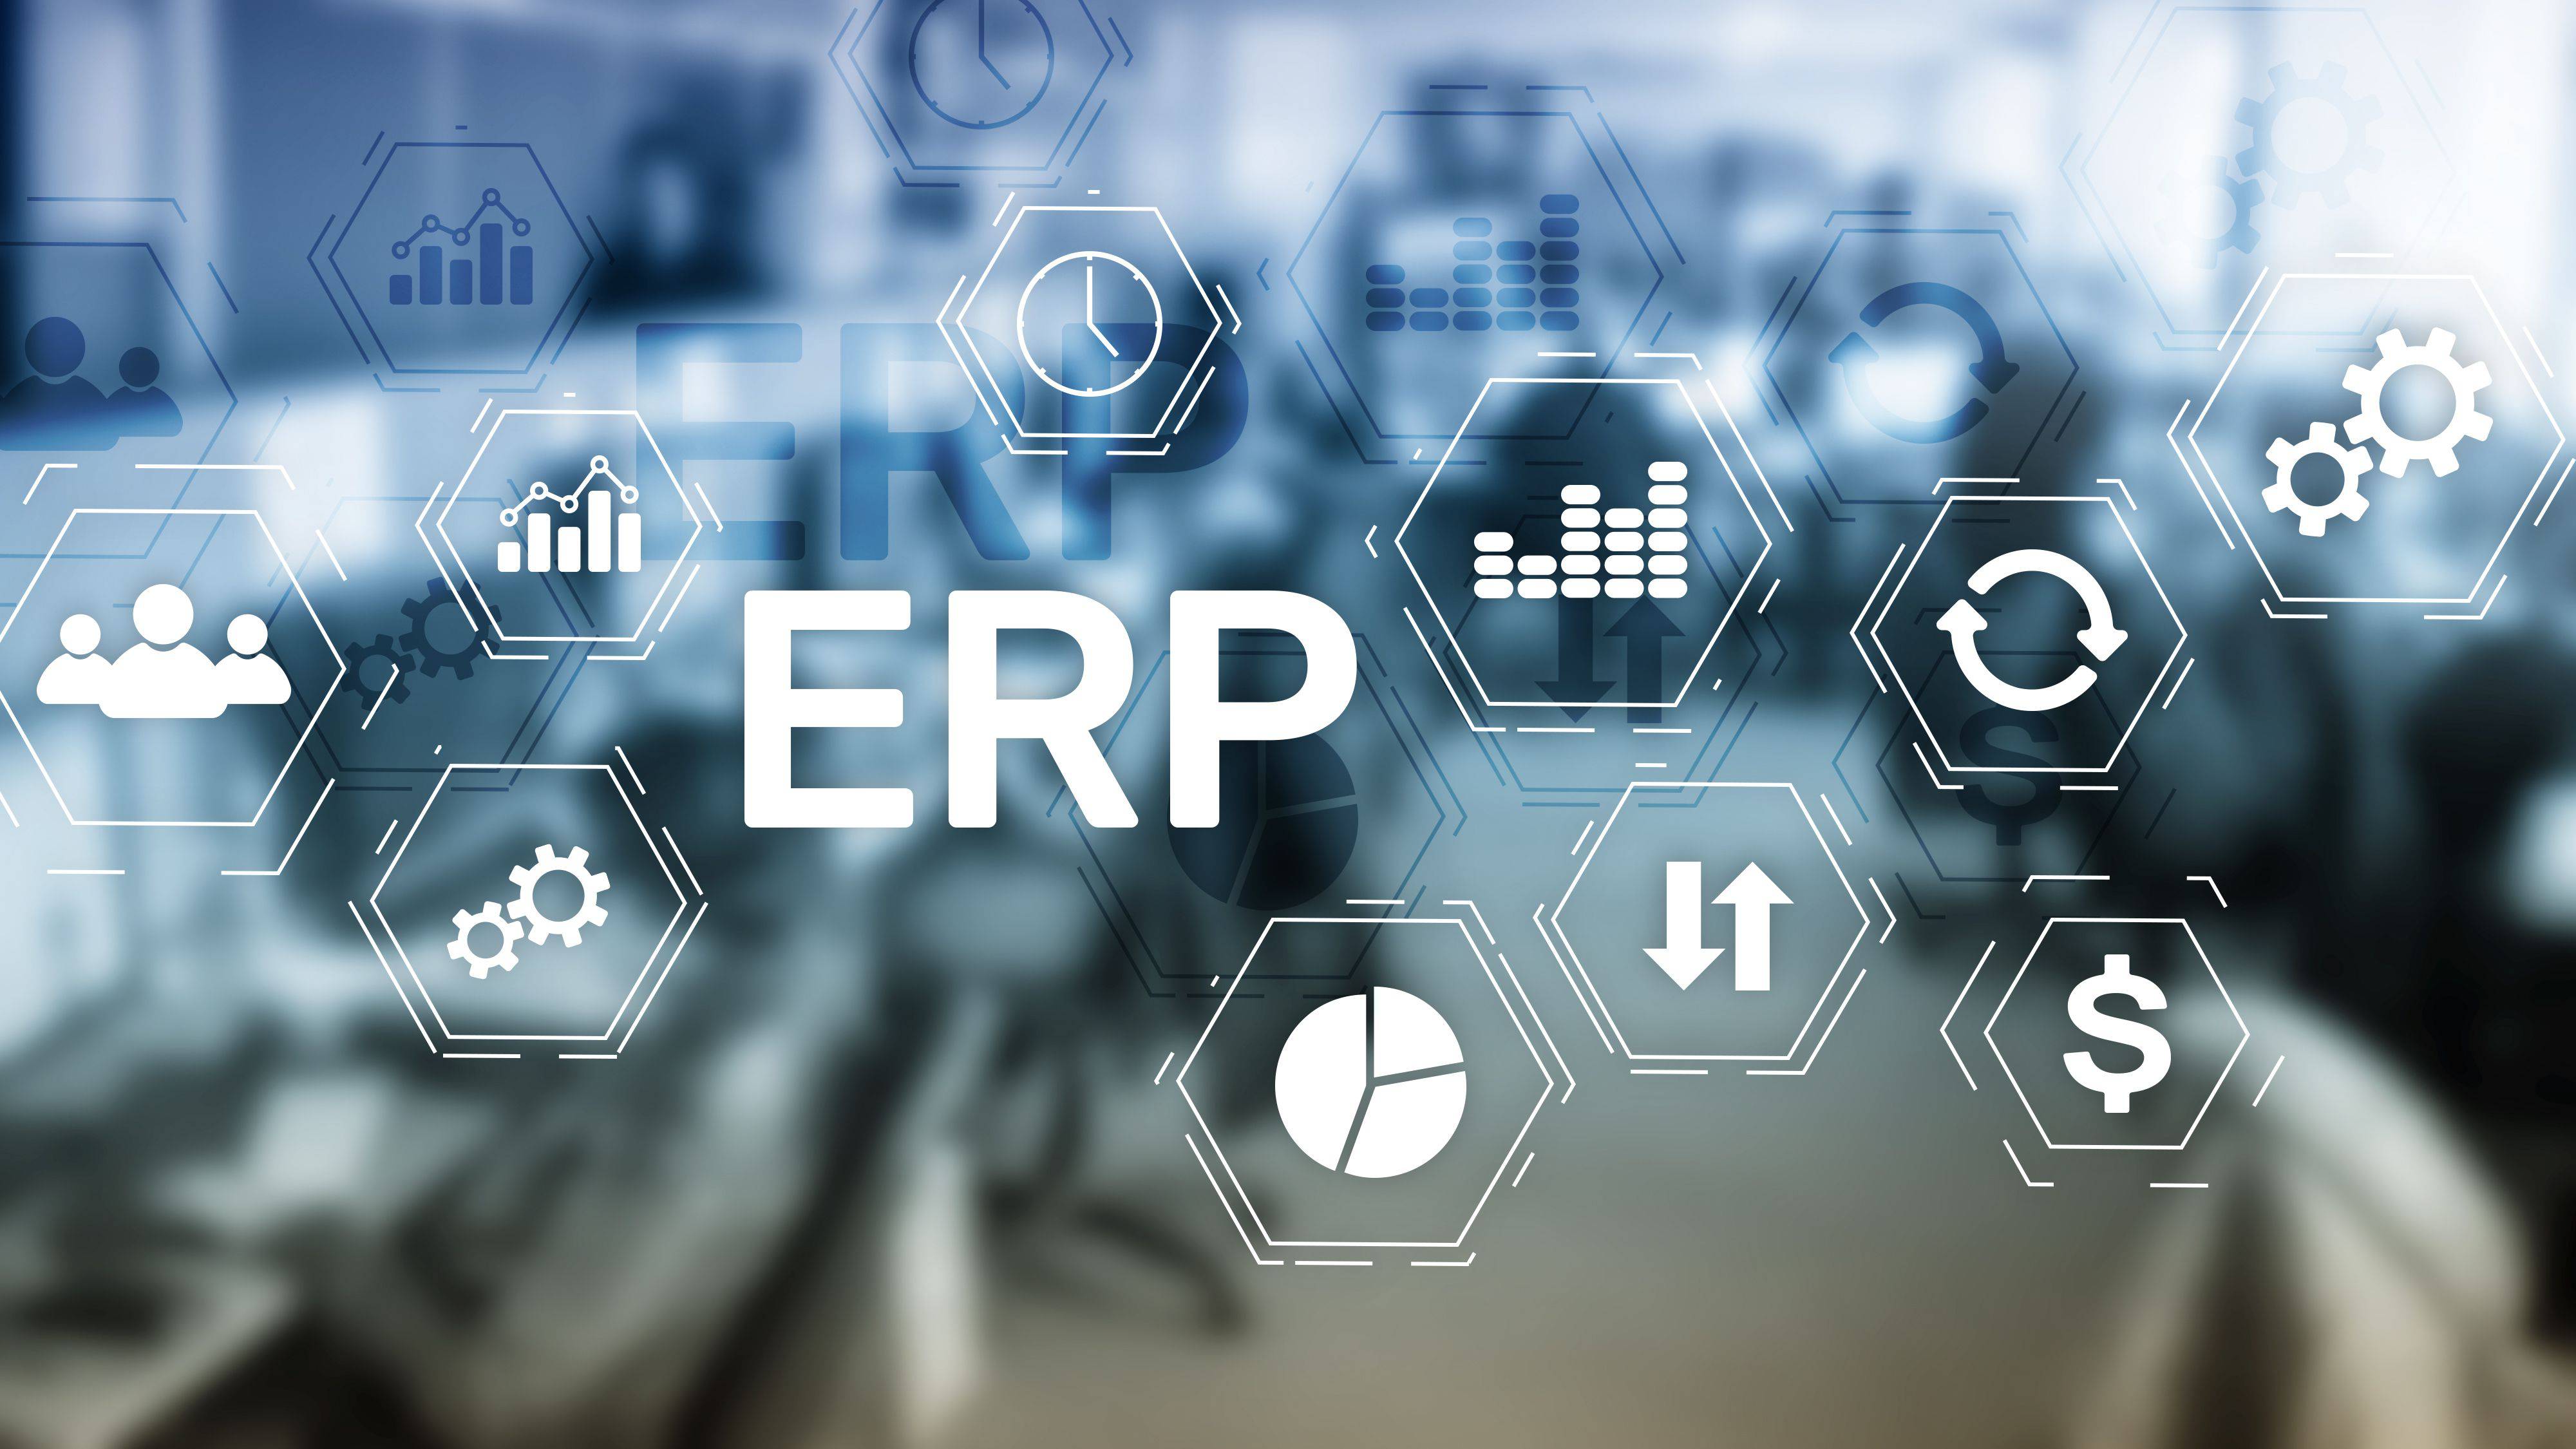 A importância de um sistema de vendas que permita integração com ERP